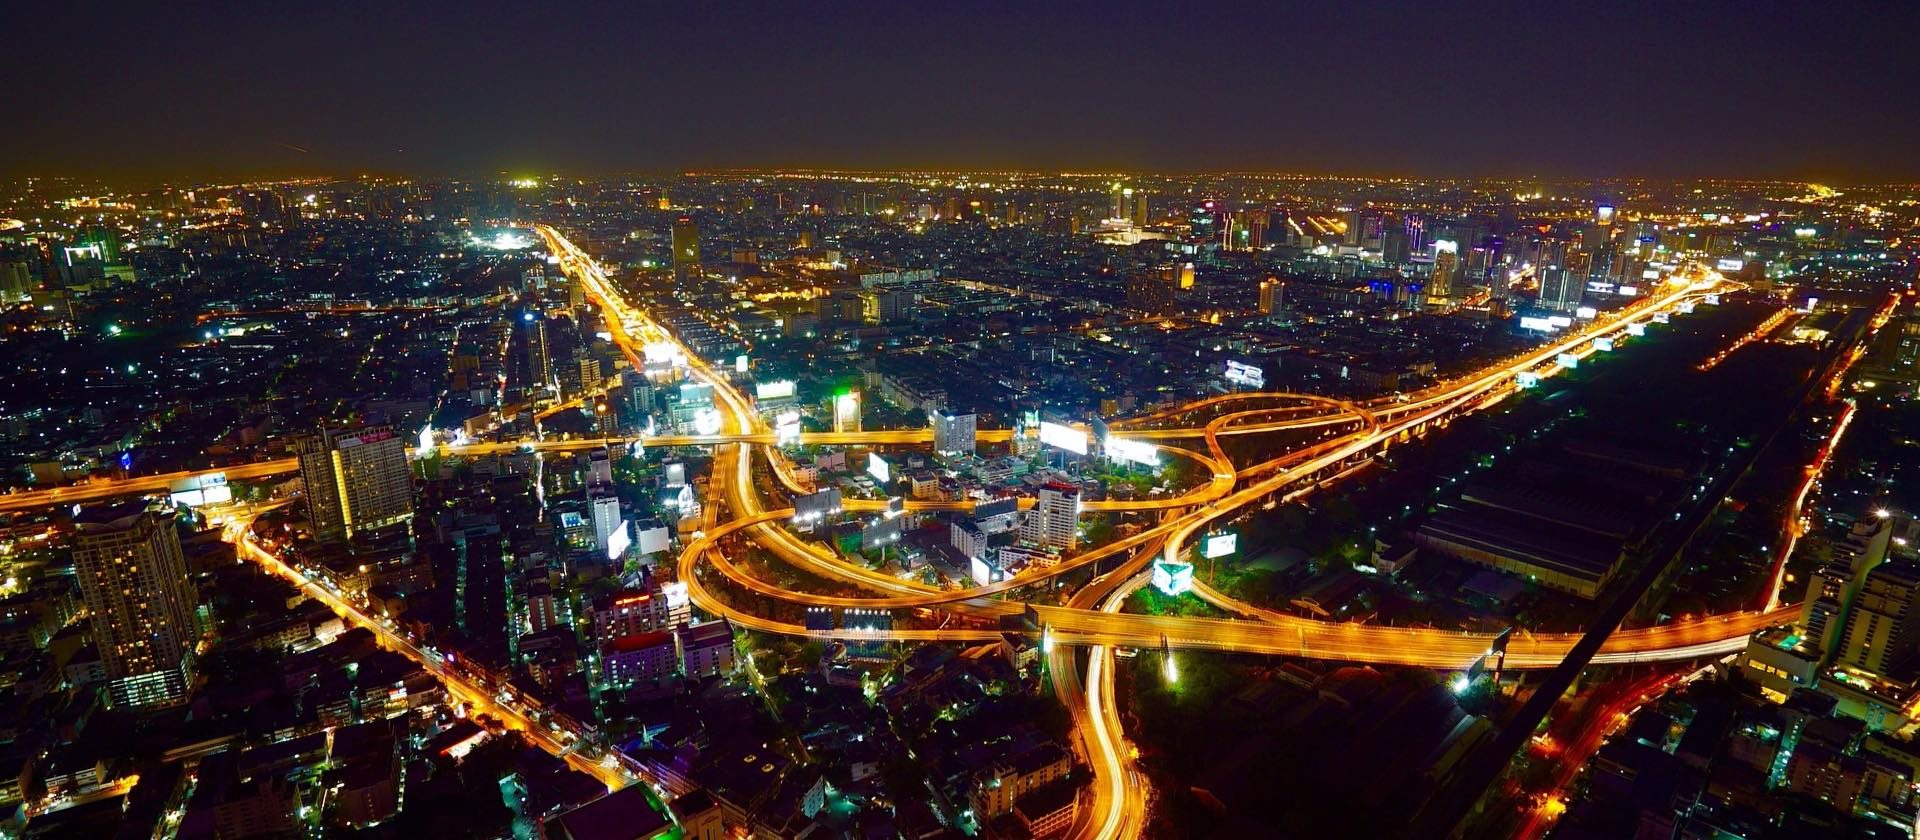 Bangkok from above at night